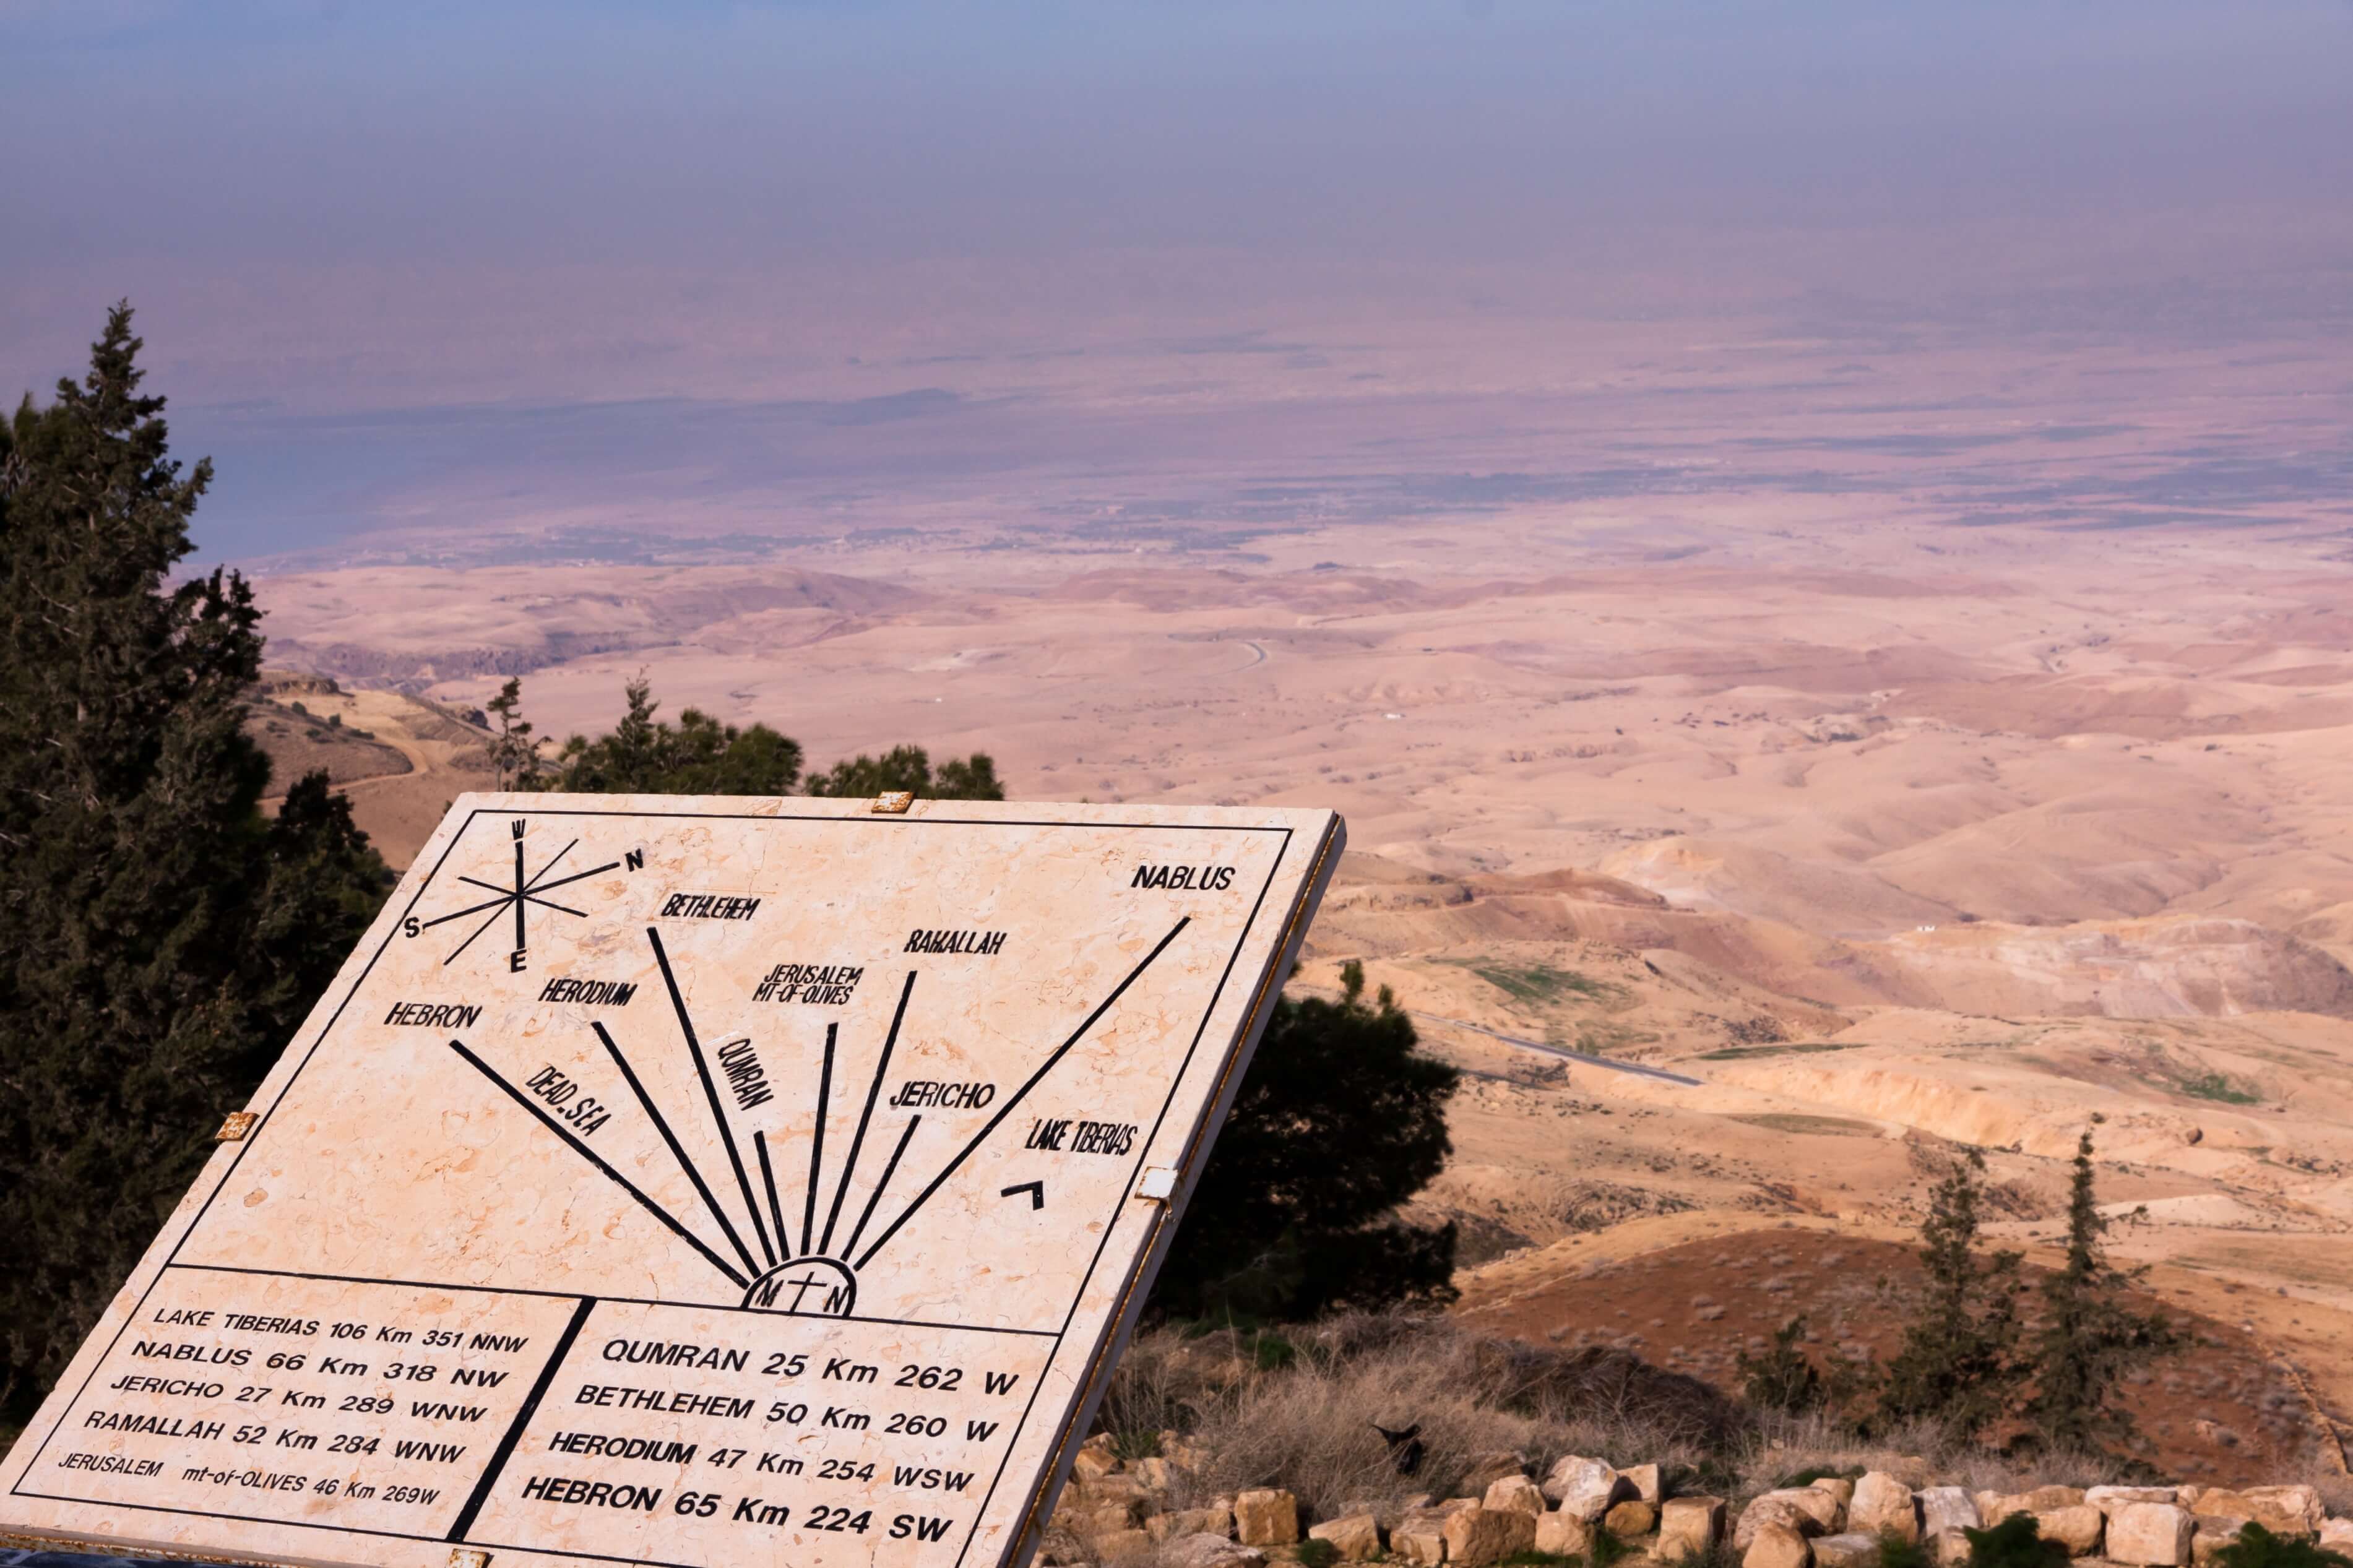 Biblical Sites in Jordan